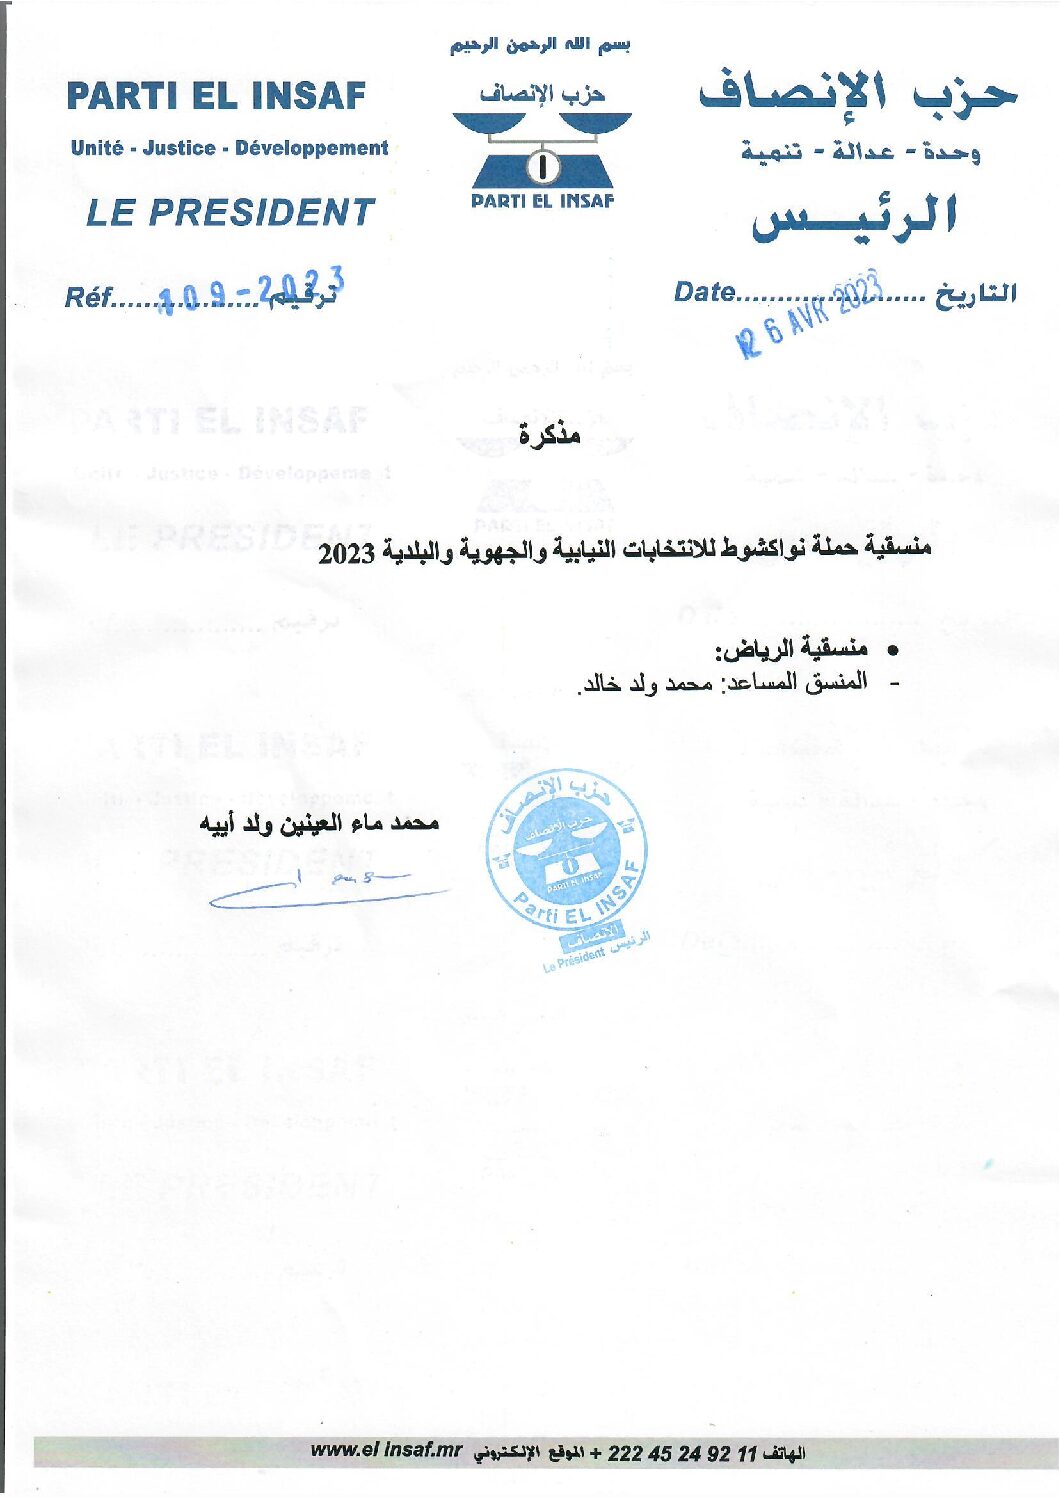 صورة تعيين المنسق المساعد لحملة الحزب على مستوى مقاطعة الرياض